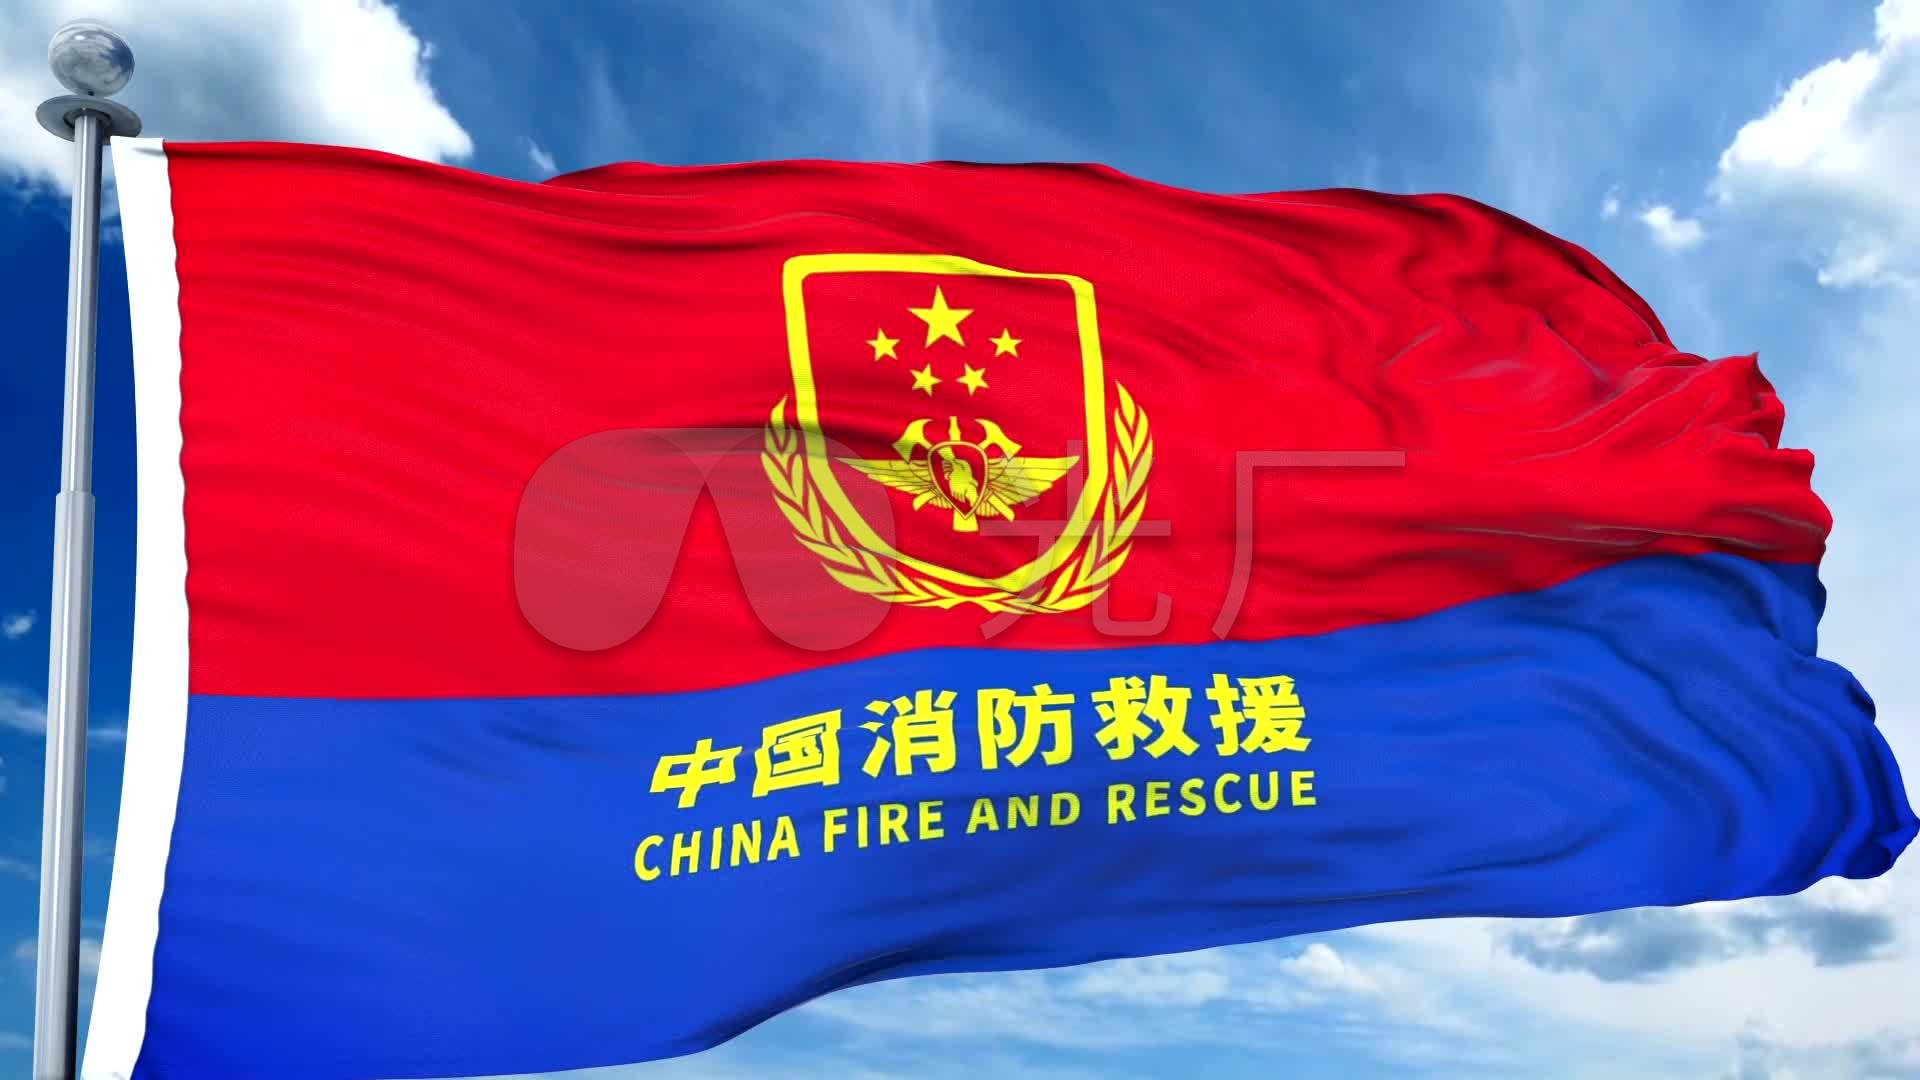 消防带旗杆中国消防救援队队旗应急管理部_1920x1080